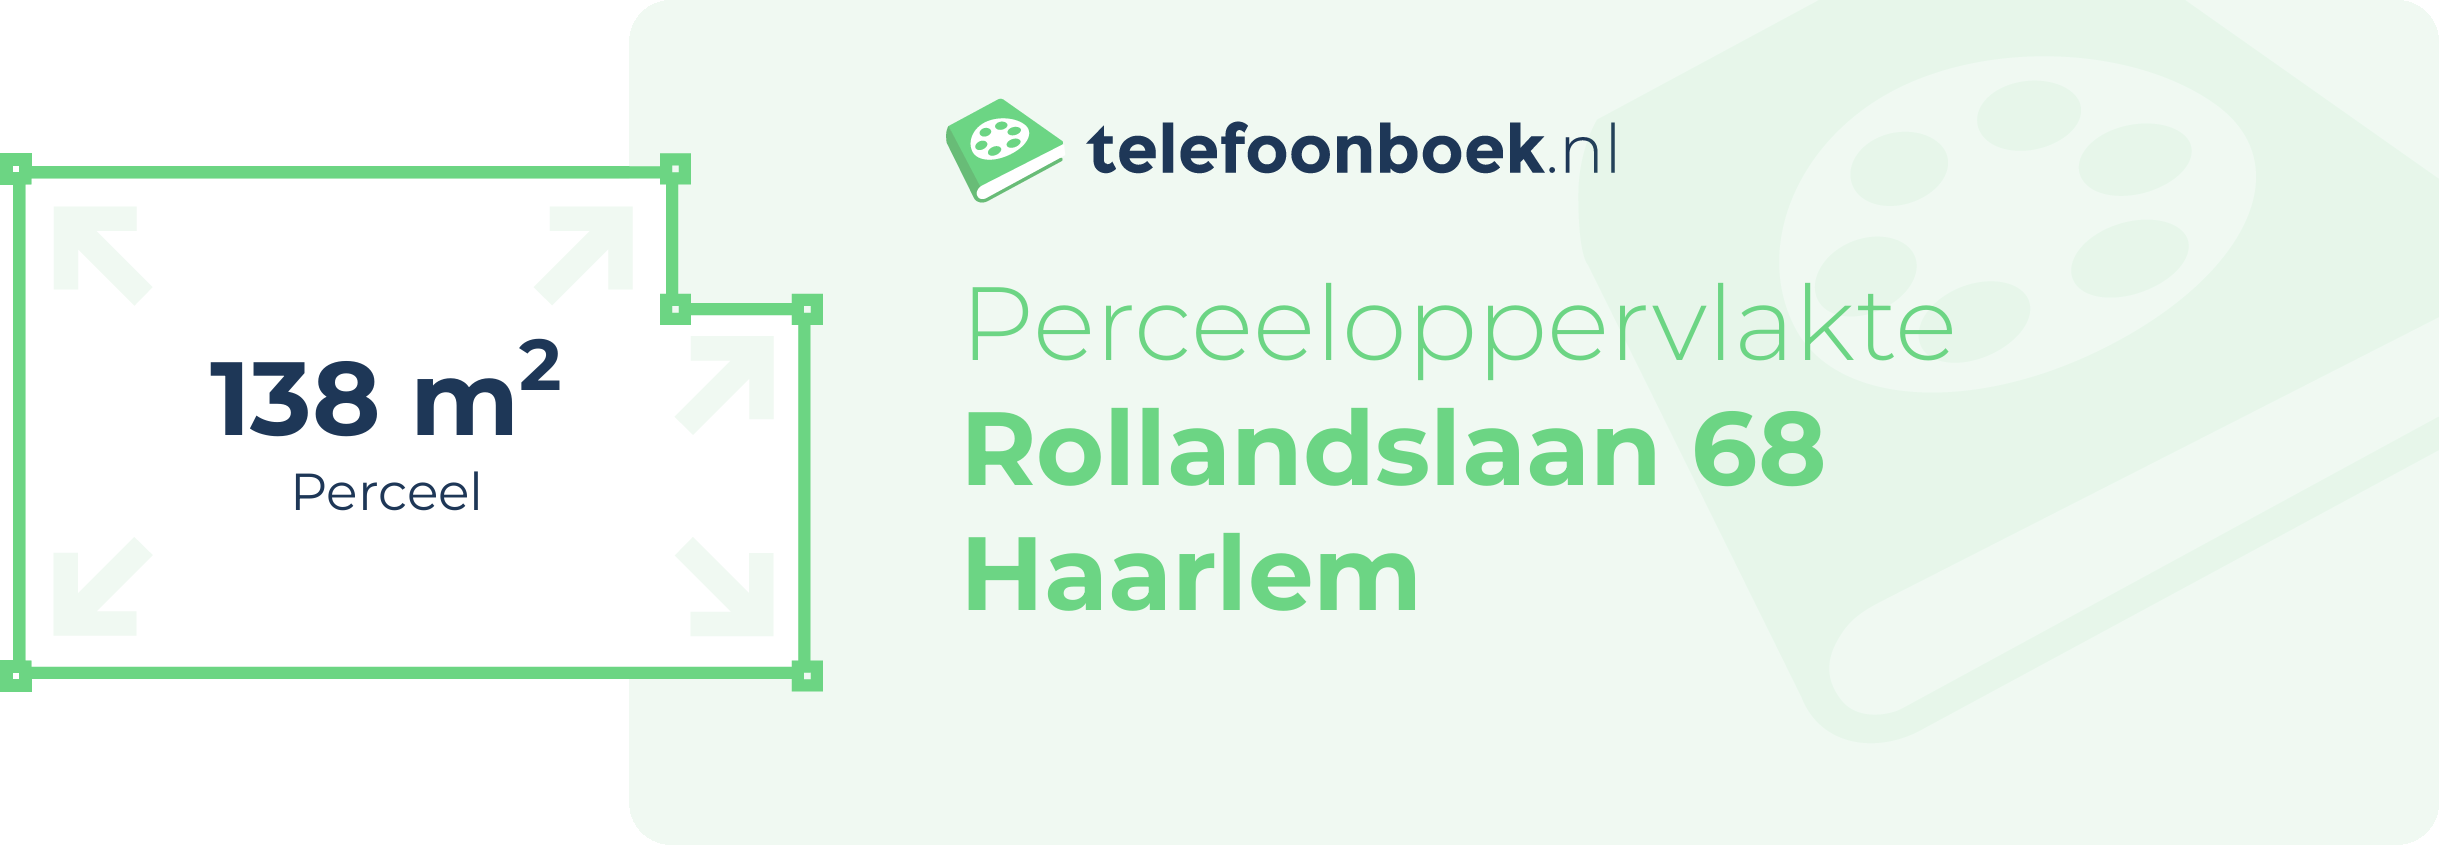 Perceeloppervlakte Rollandslaan 68 Haarlem